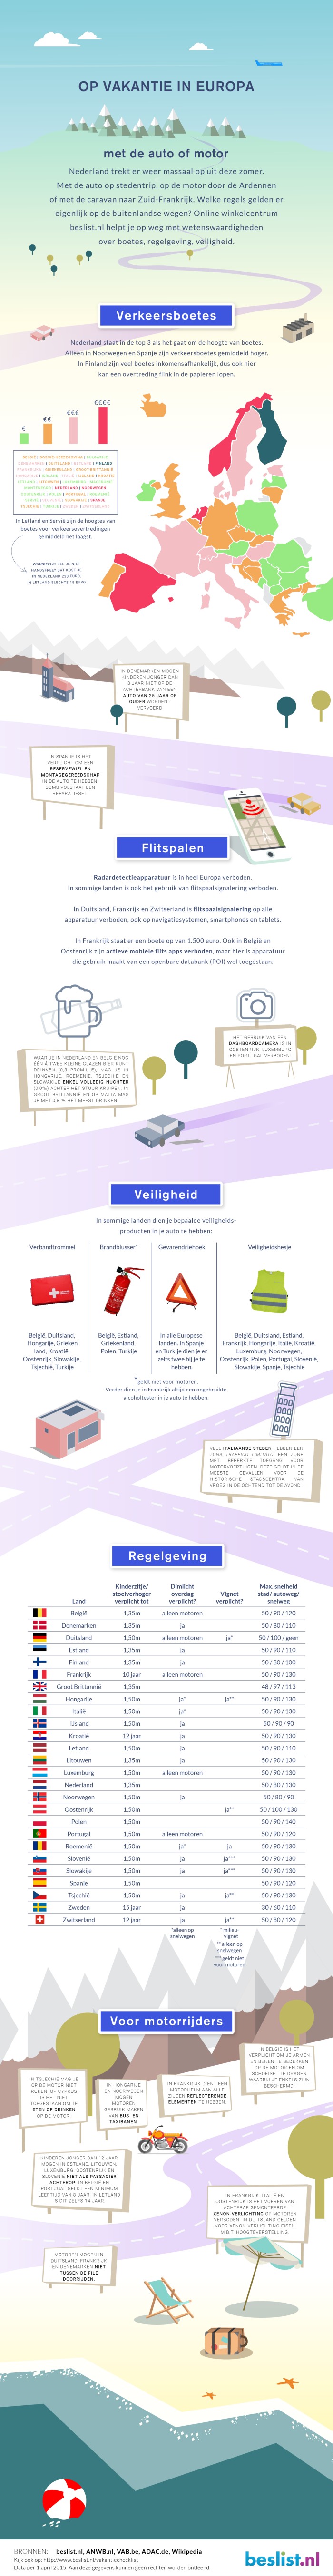 Infographic verkeersregels